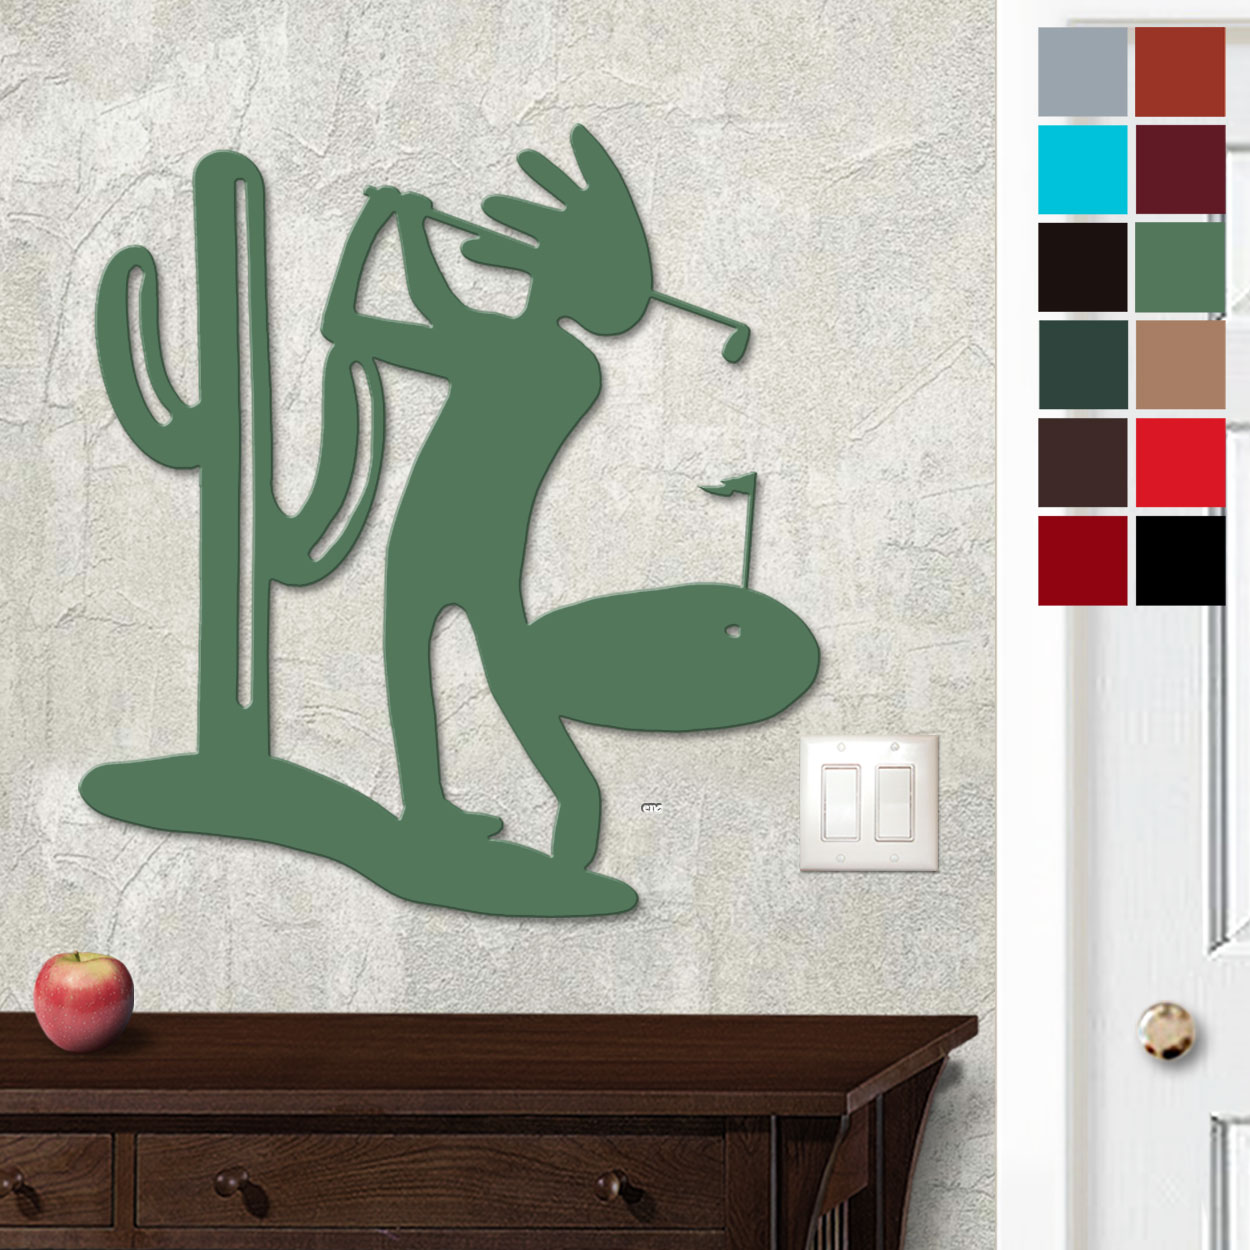 625019 - 18in or 24in Floating Metal Wall Art - Kokopelli Cactus Golfer - Choose Color